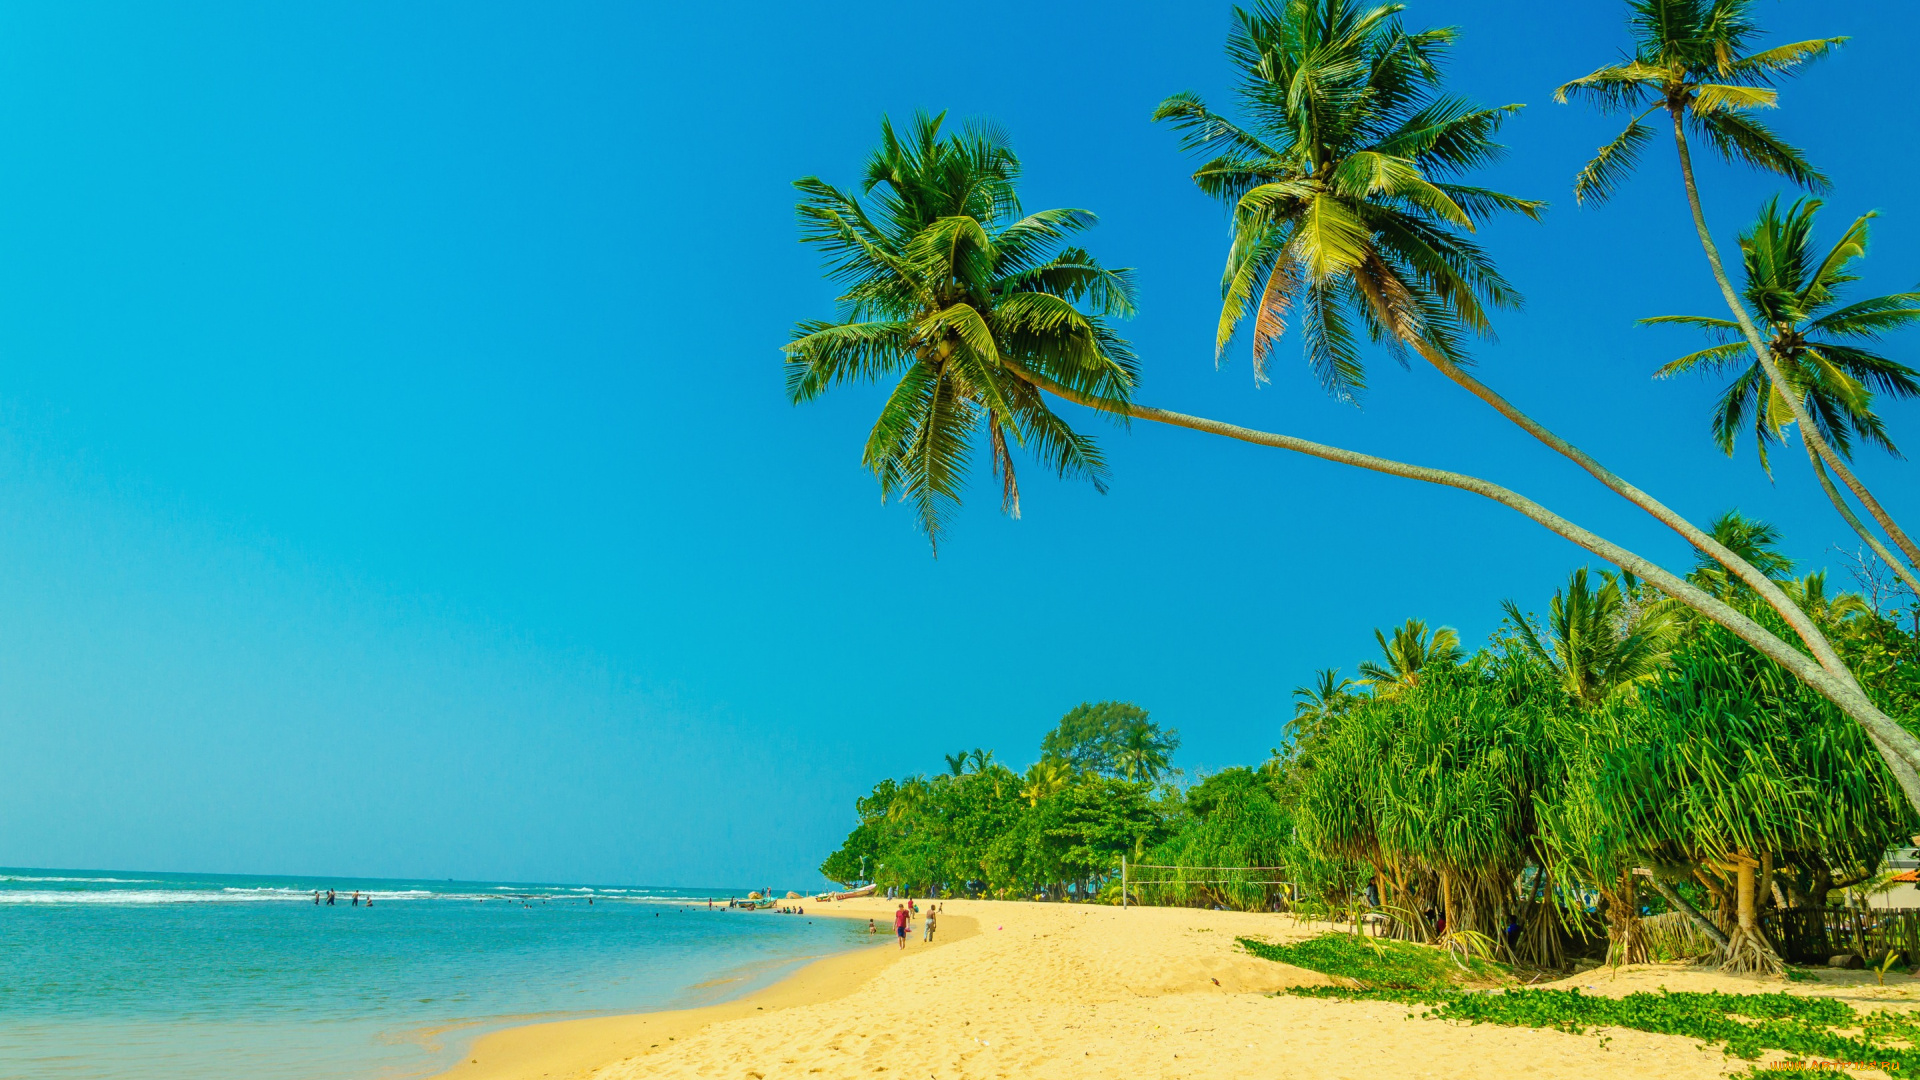 природа, тропики, paradise, пальмы, tropical, sand, beach, summer, песок, shore, берег, море, пляж, palms, sea